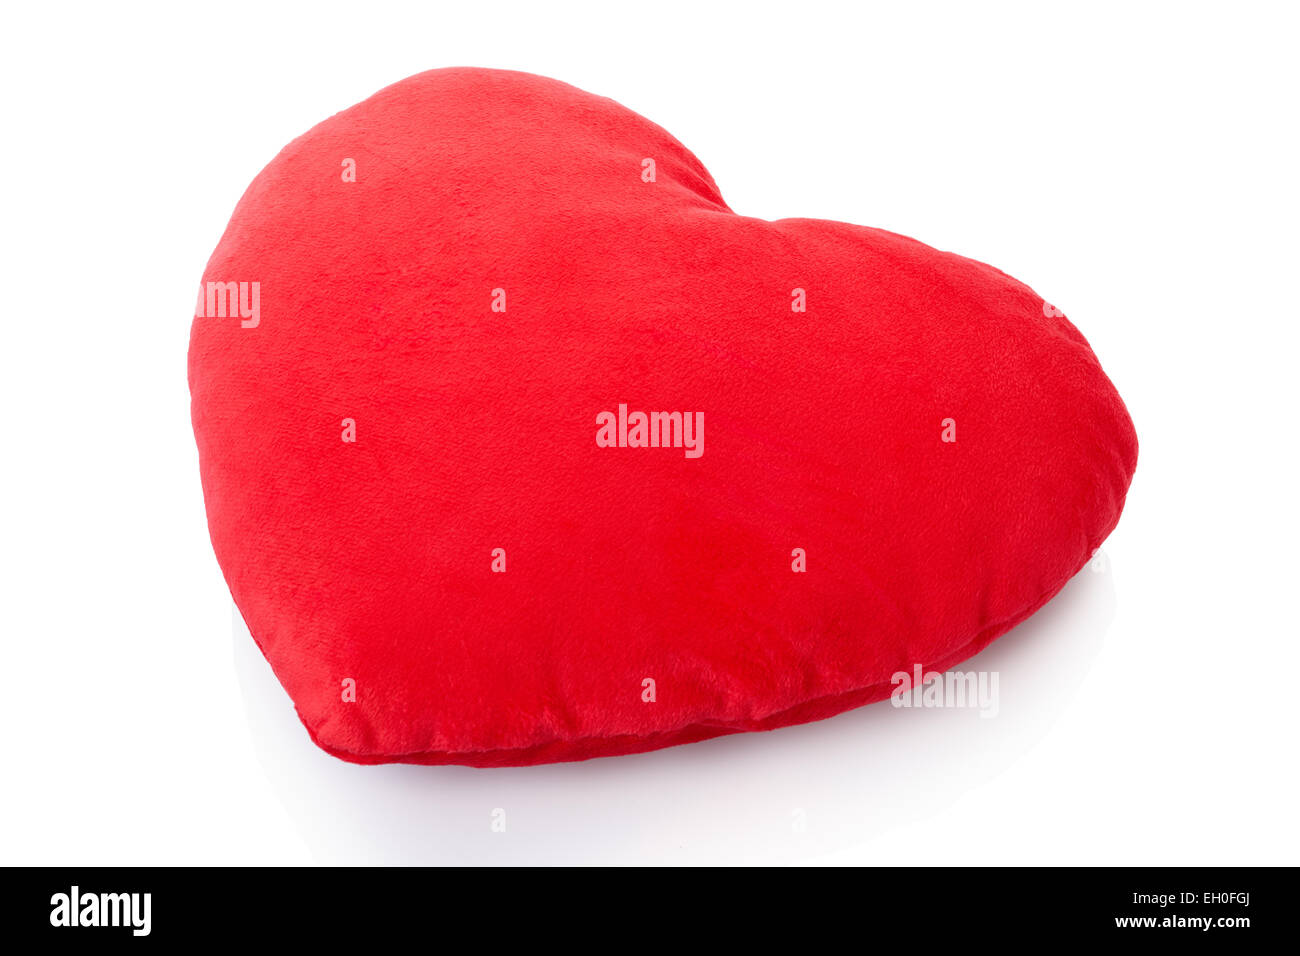 Corazón rojo cojín almohada, aislado en blanco, trazado de recorte incluido Foto de stock